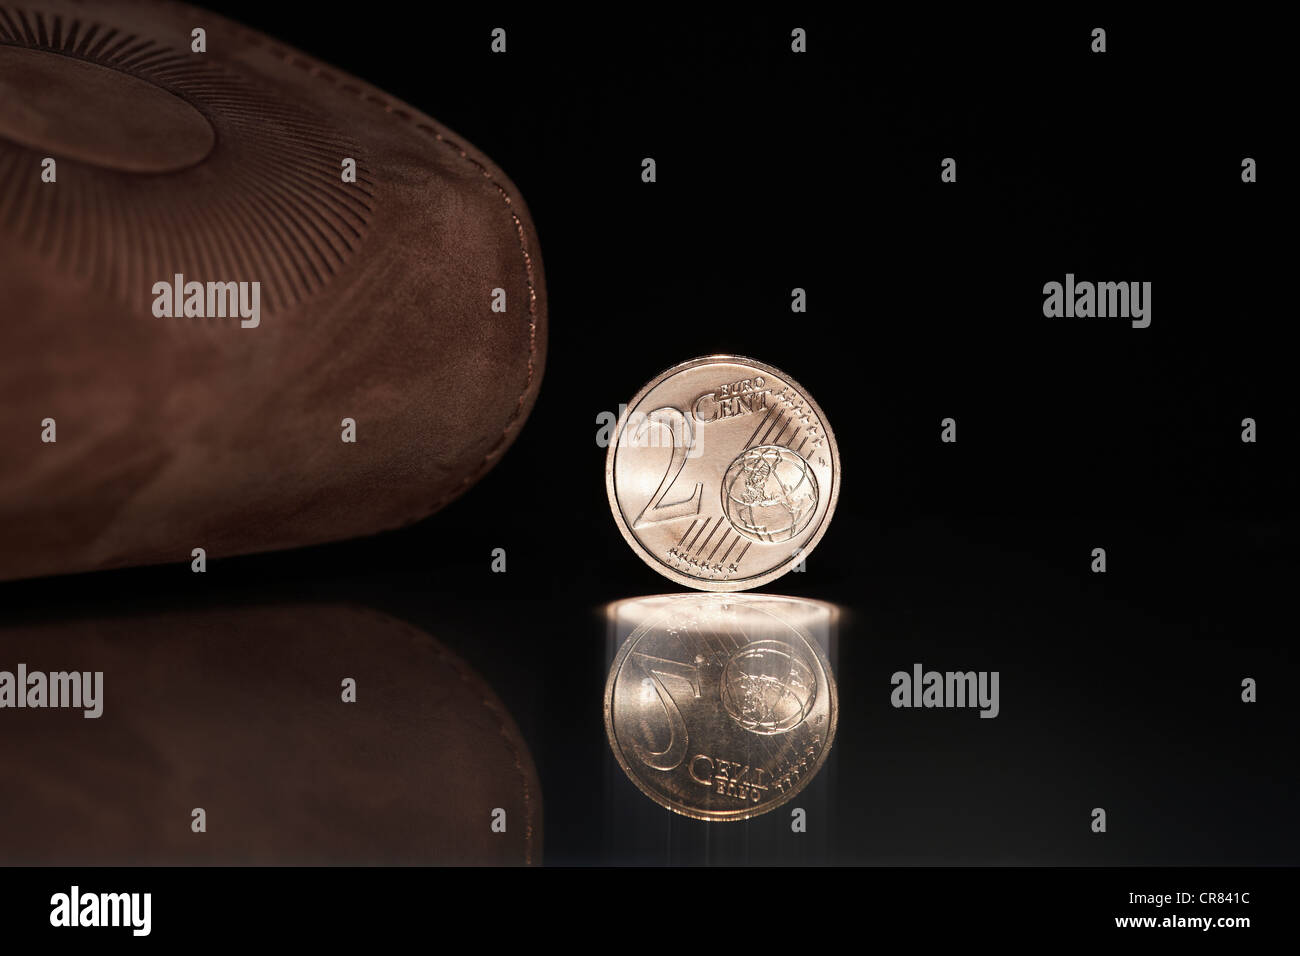 La moneda de 2 céntimos de euro en frente de una cartera o monedero de cuero marrón Foto de stock